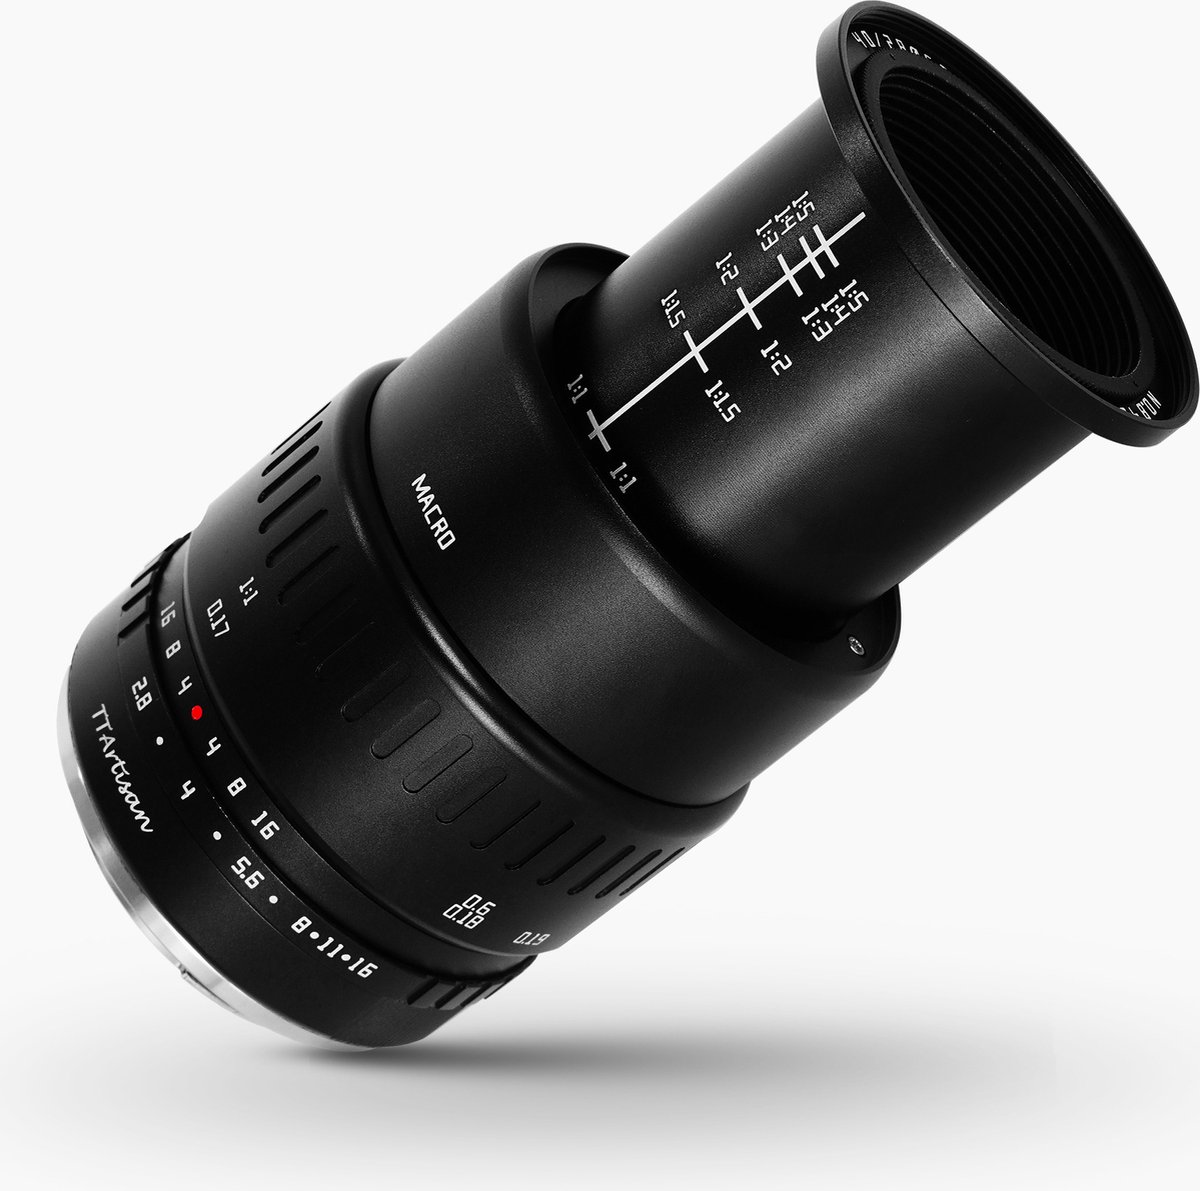 TT Artisan - Cameralens - 40mm F2.8 Macro APS-C voor Fuji FX-vatting